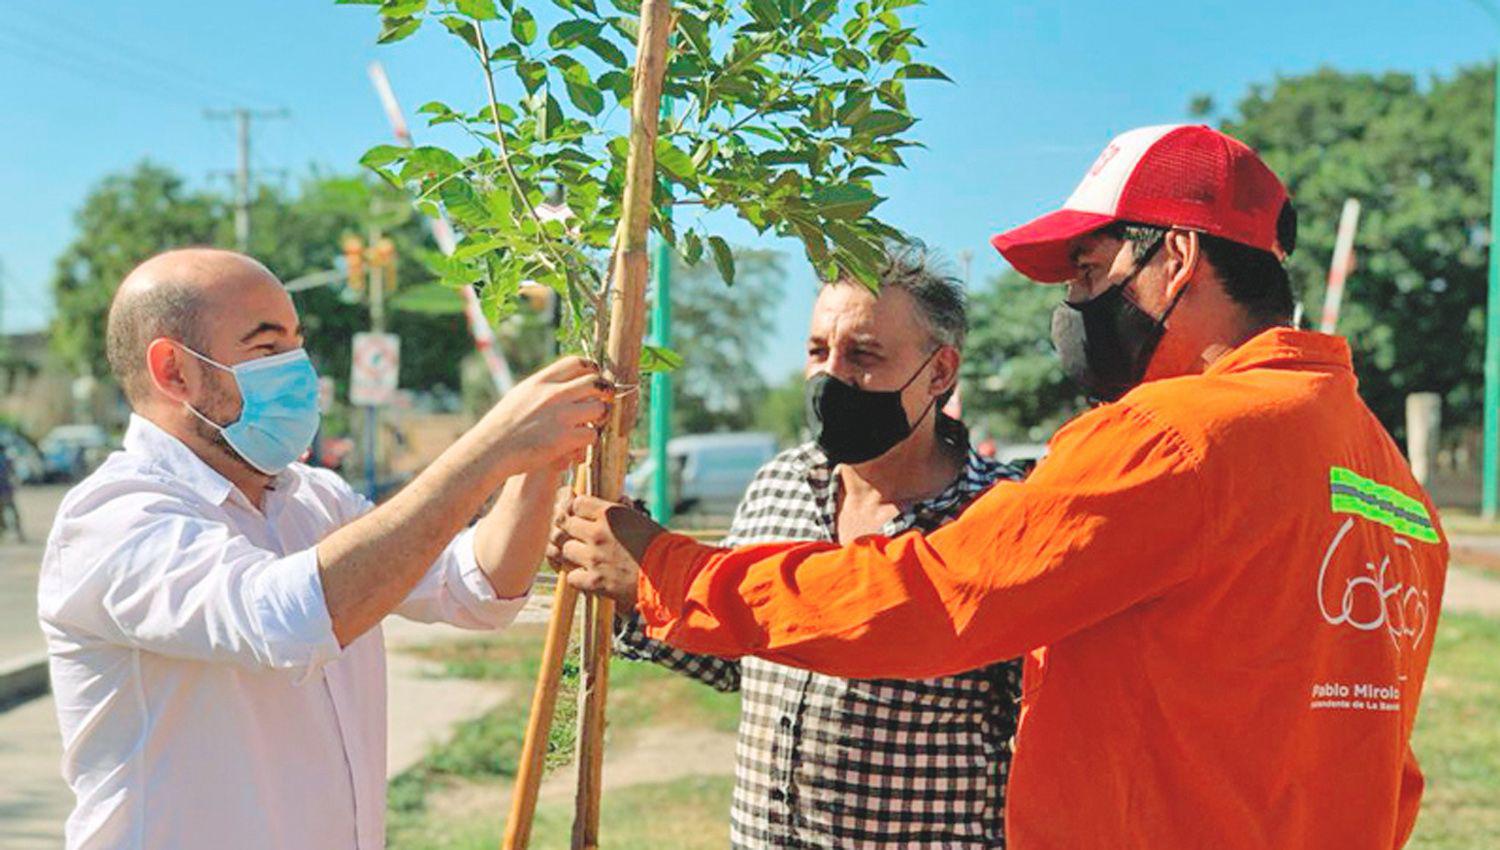 El intendente Mirolo lanzoacute el Plan de Reforestacioacuten 2021